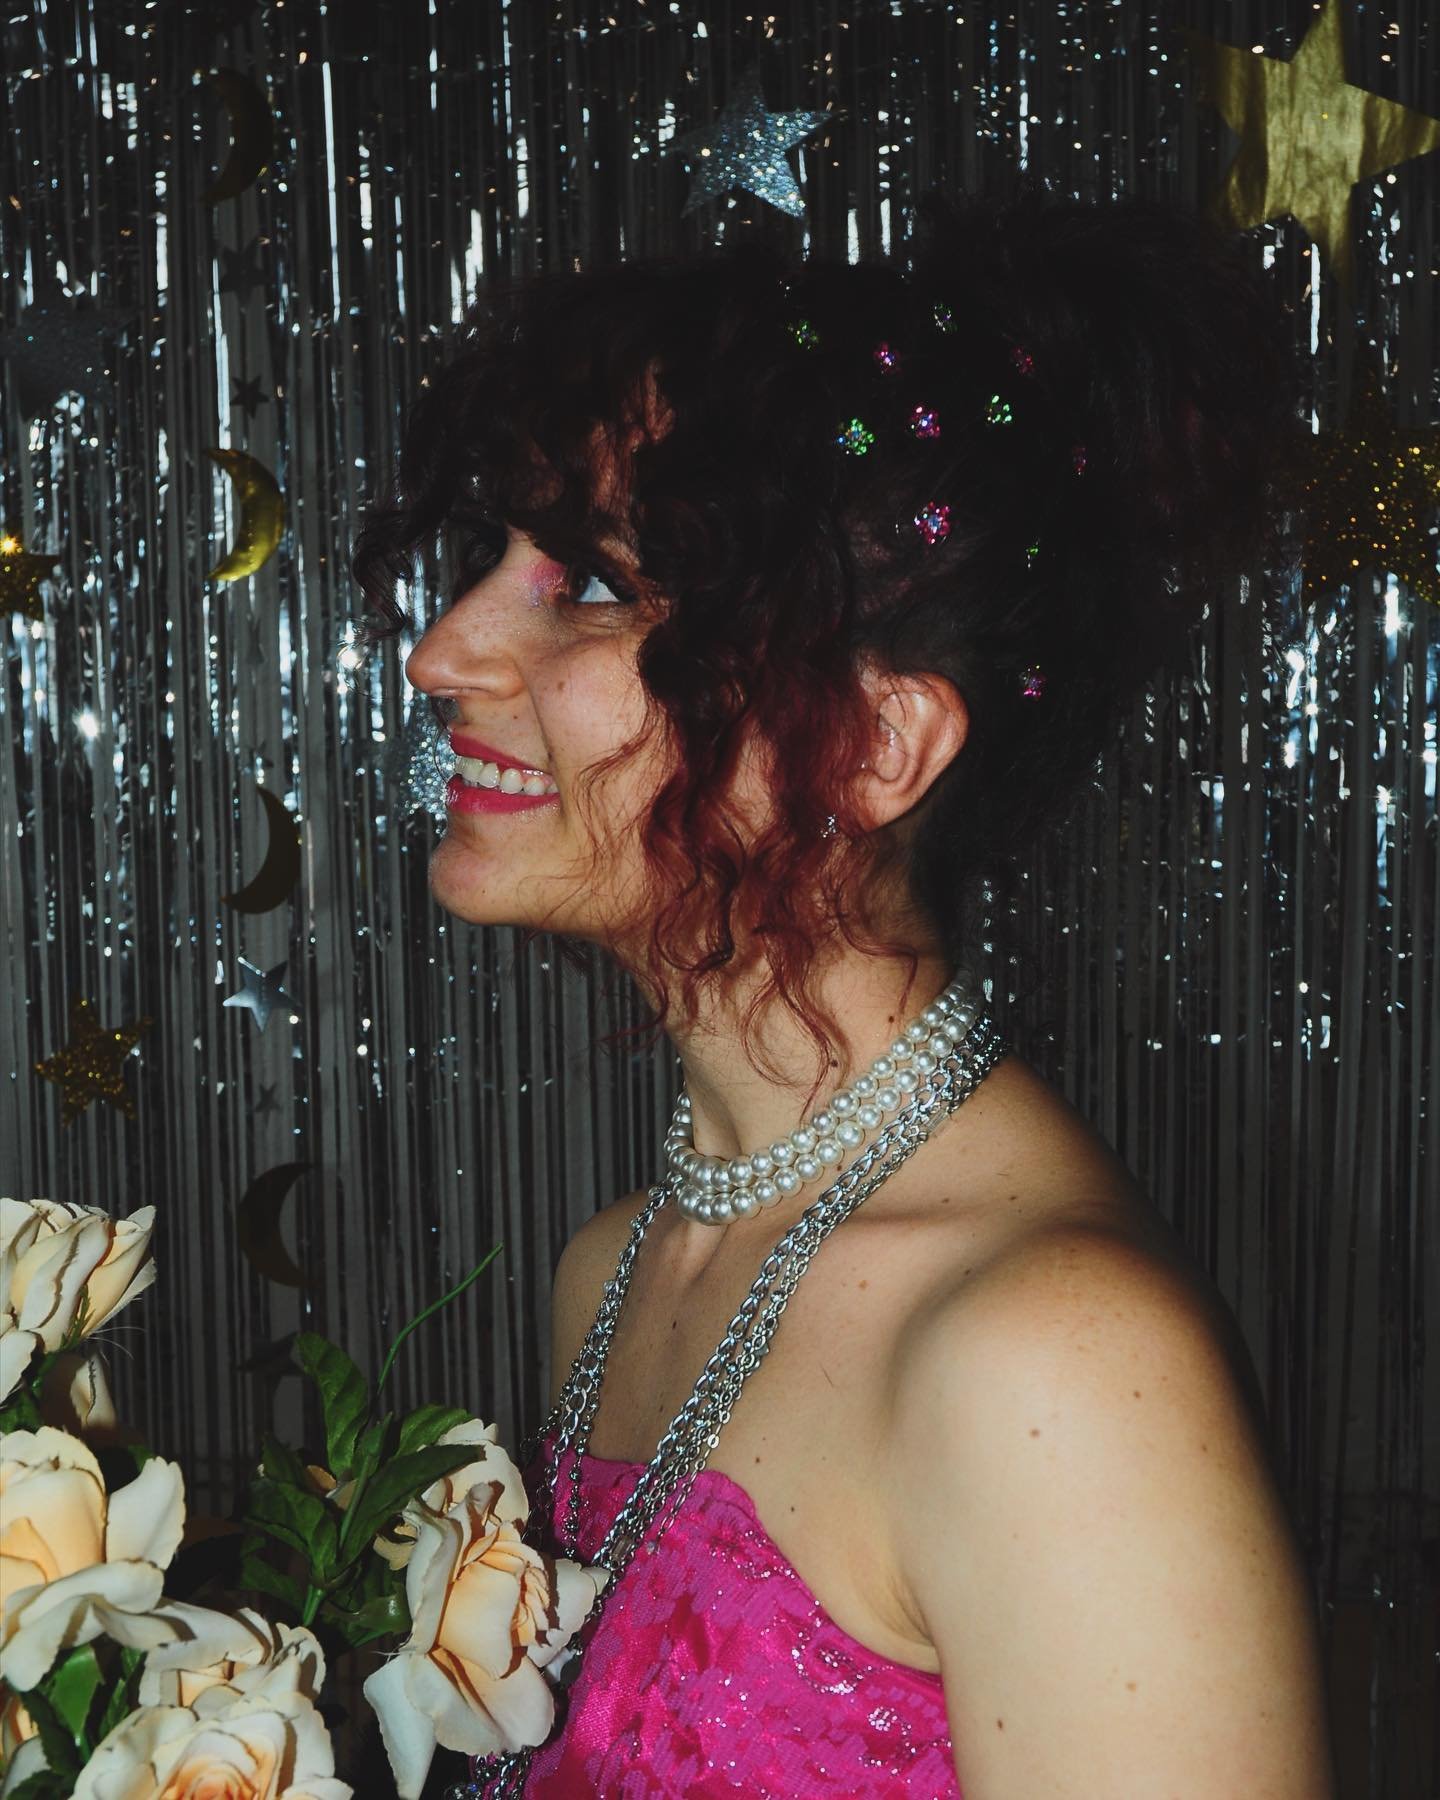 @briglit for
Vile Prom
👑

#hamiltonvintagecommunity #vilegloomvintage #hamontvintage #vintagepromdress #vintageprom